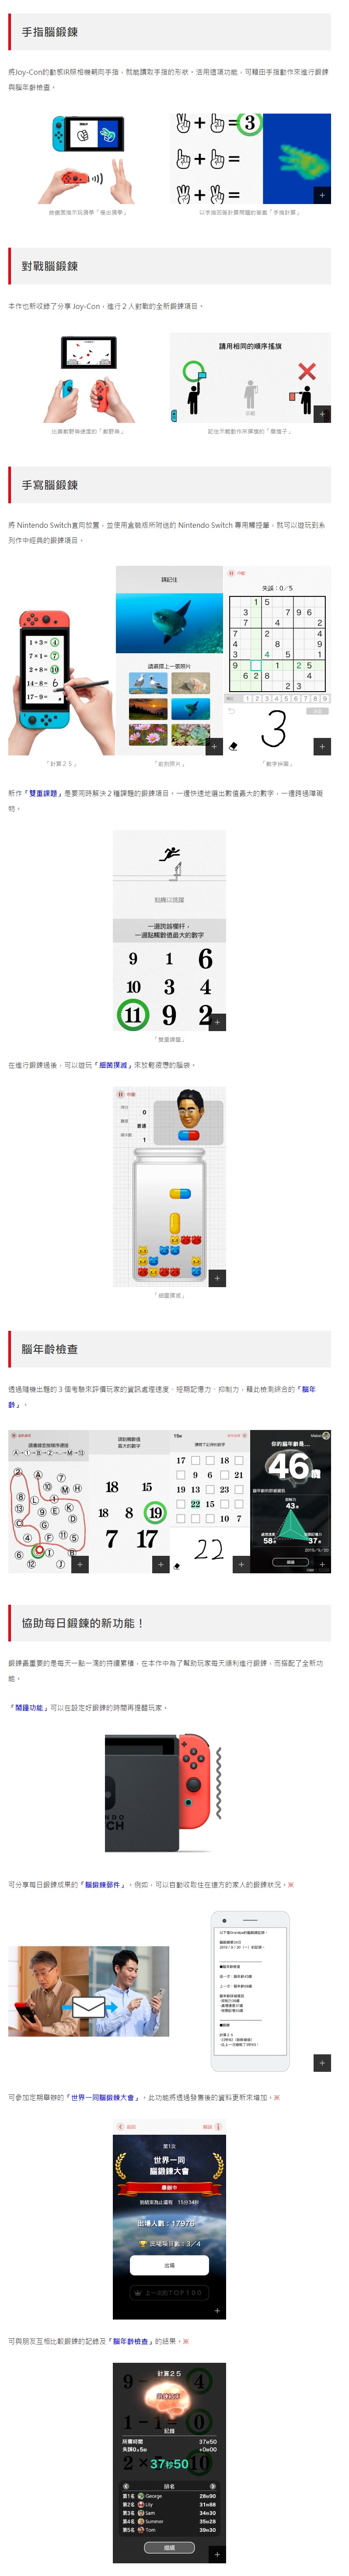 开始补脑！《脑锻炼》确认7月1日推出Switch中文版